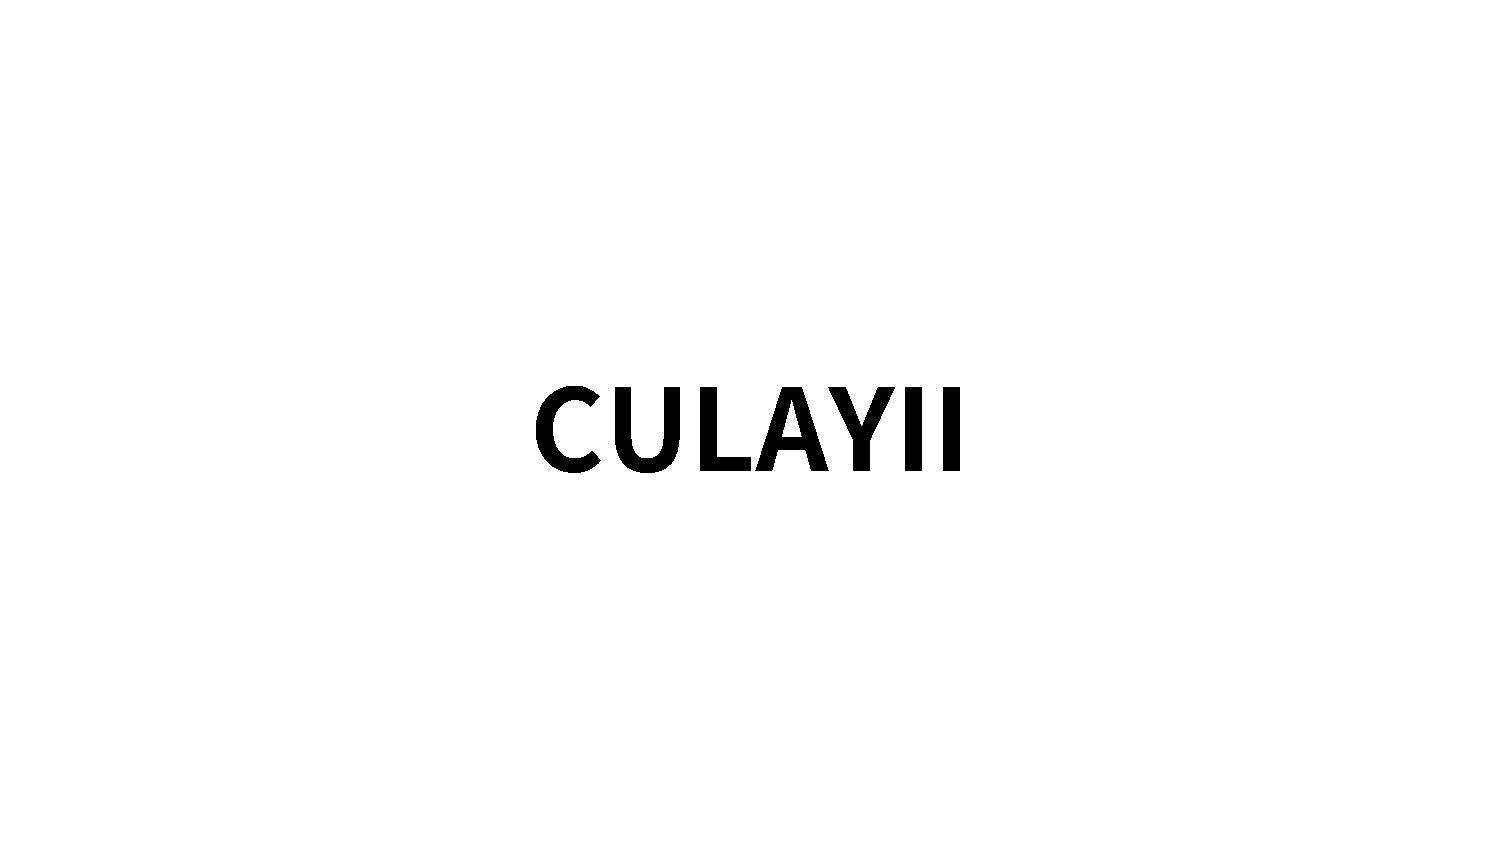 CULAYII